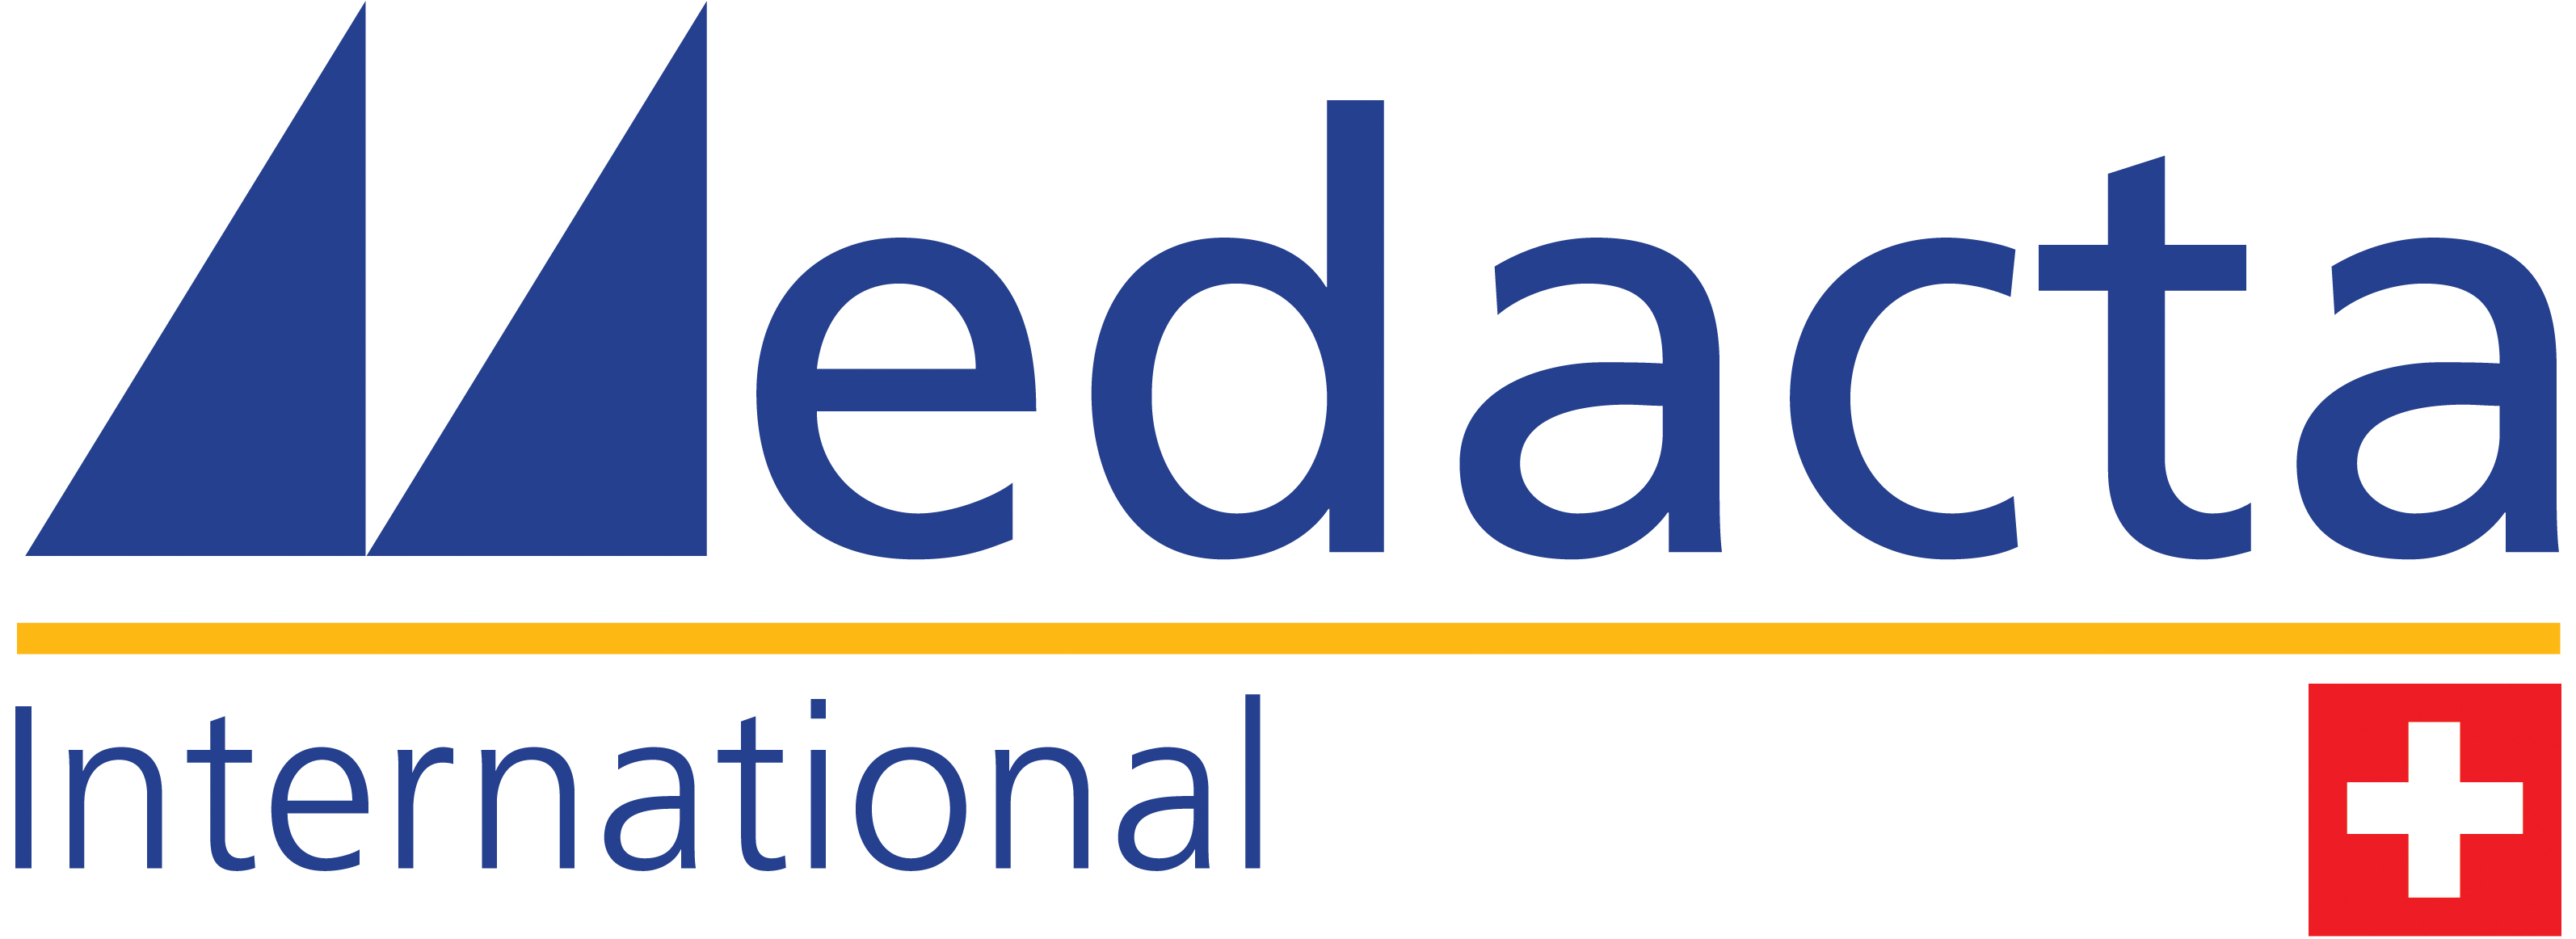 MEDACTA INTERNATIONAL